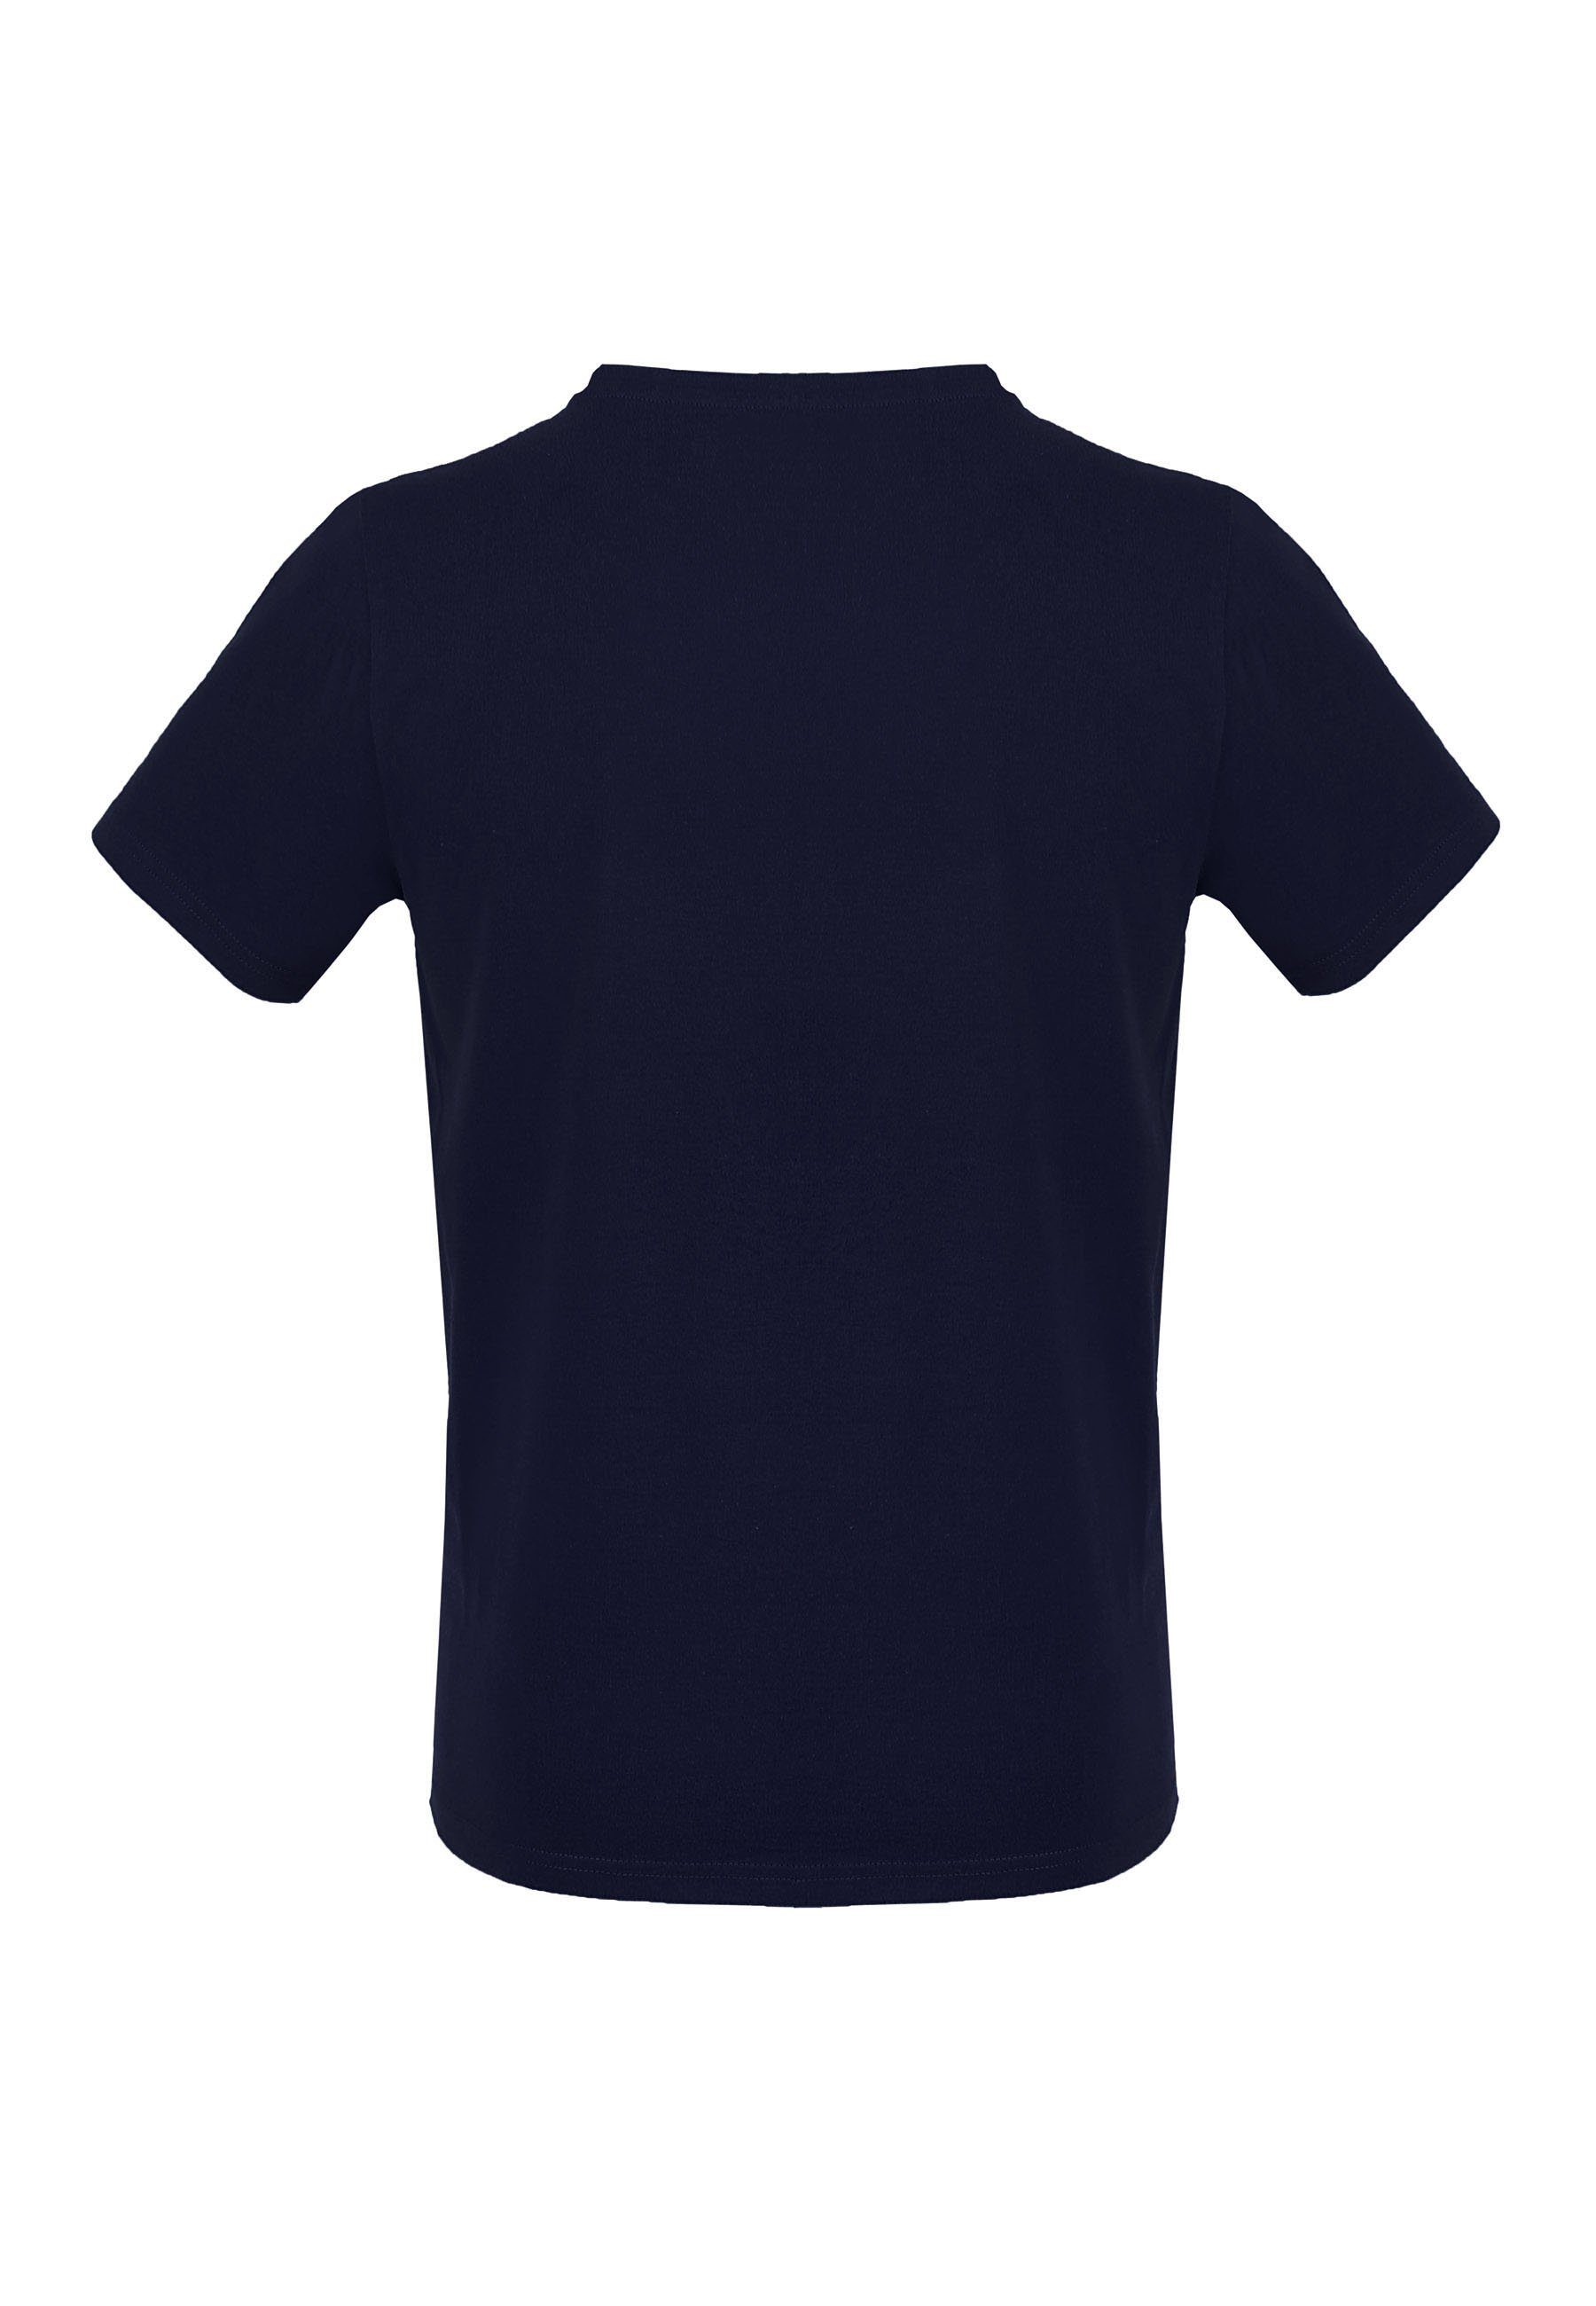 MELA Kurzarmshirt T-Shirt Basic navy